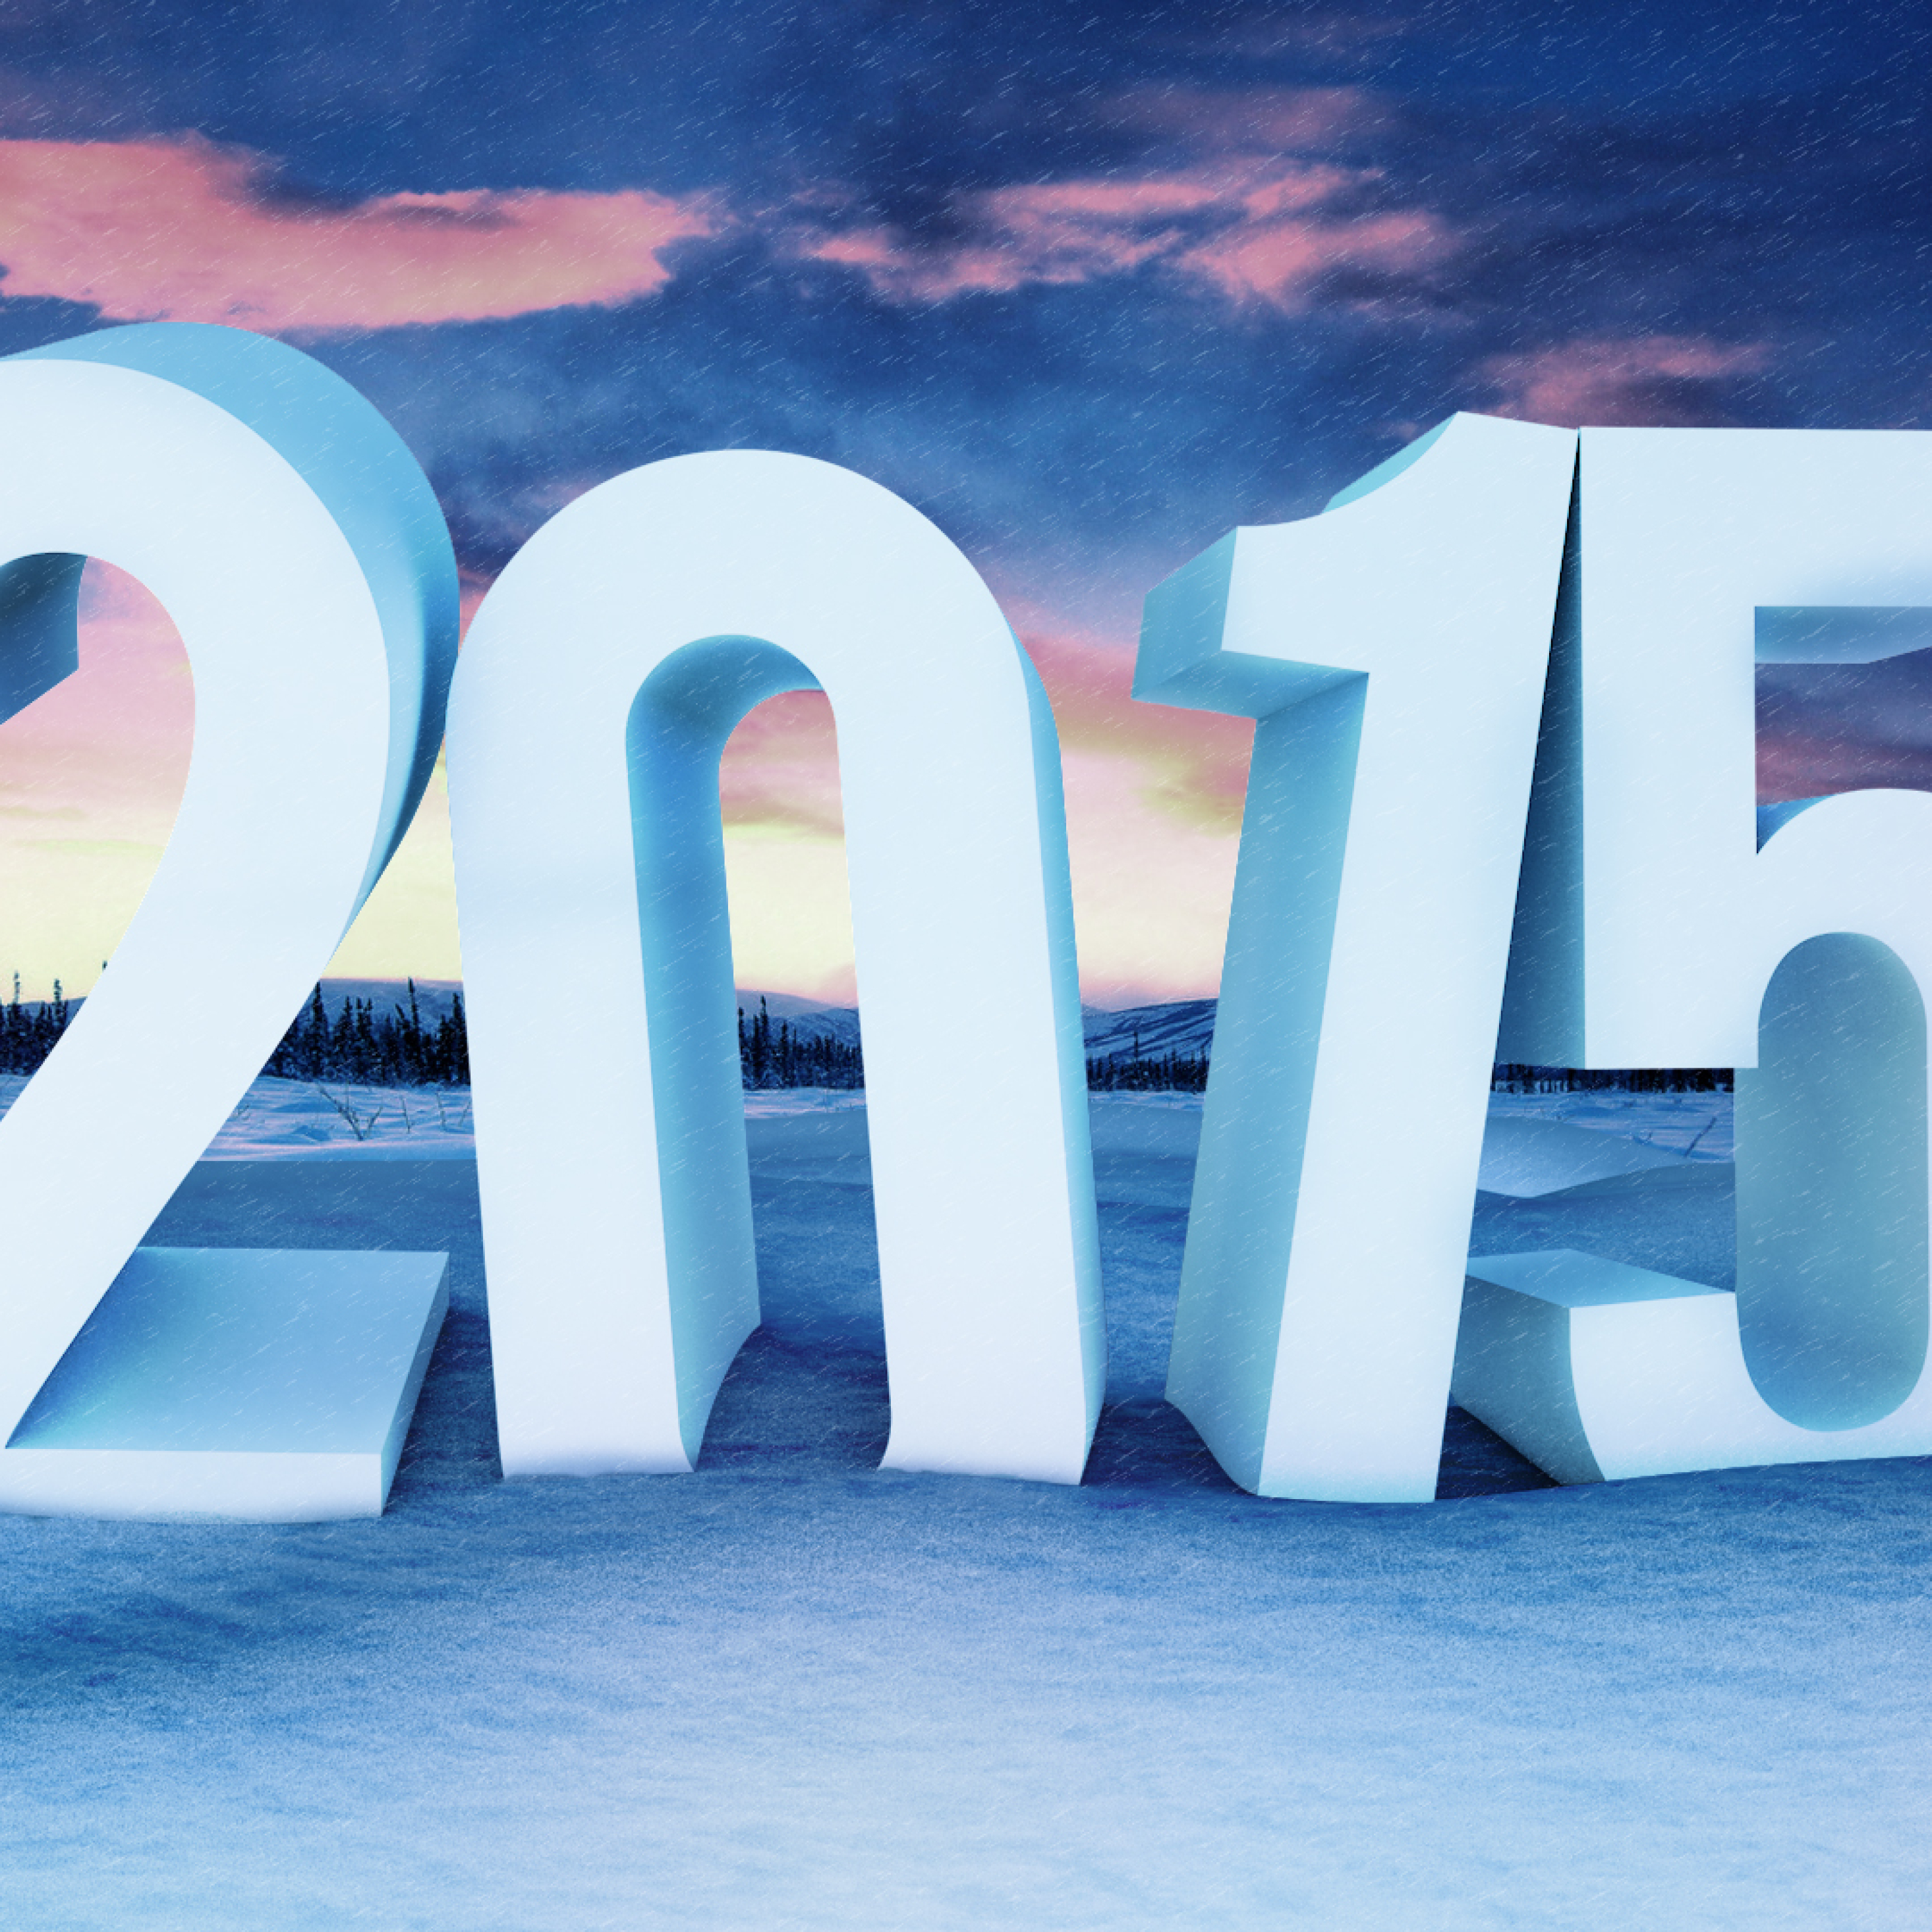 2015 год объявили годом. 2015 Год. 2015 Год картинки. Картинки новый год 2015. Красивые картинки 2015.